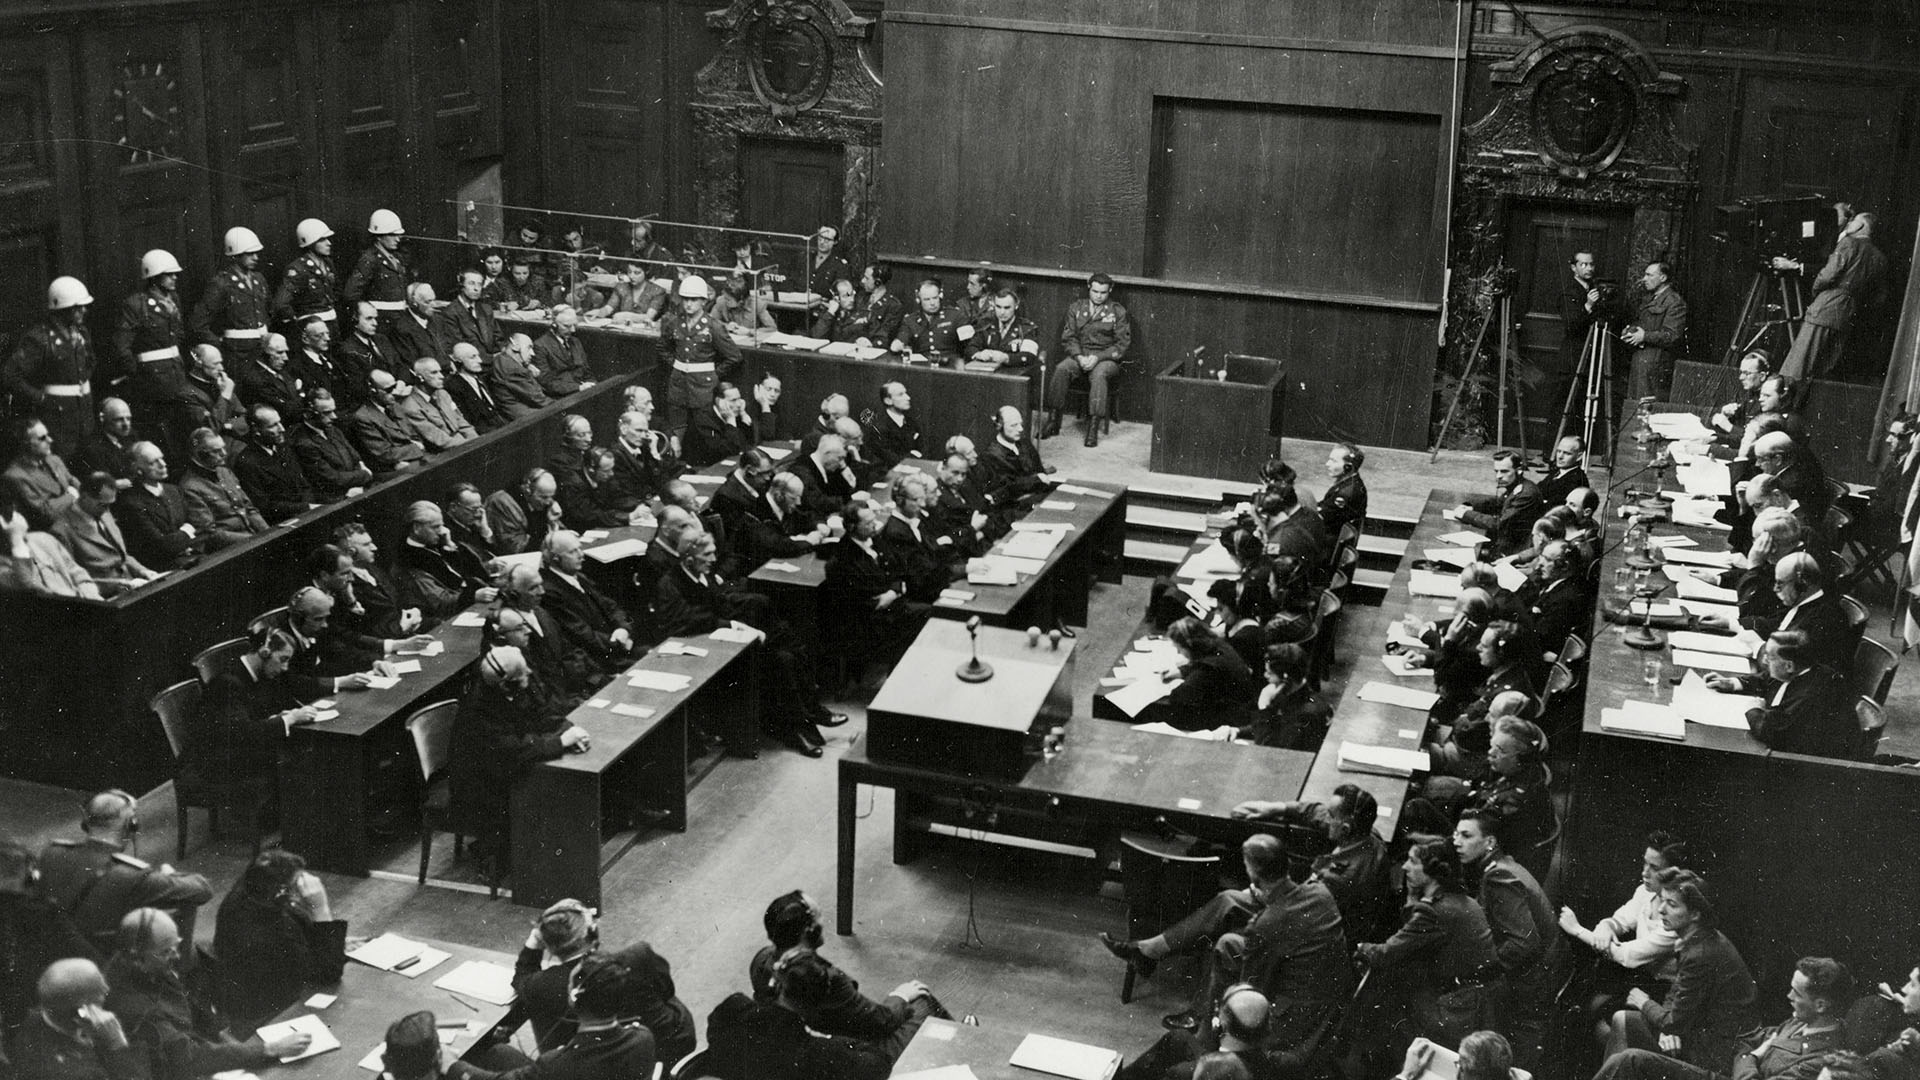 Los 21 discípulos de Hitler, sentados en el banquillo de acusados del Palacio de Justicia, escuchan parte del veredicto del Tribunal Internacional de Nuremberg (Foto de Northcliffe Collection/ANL/Shutterstock -10401392a-)